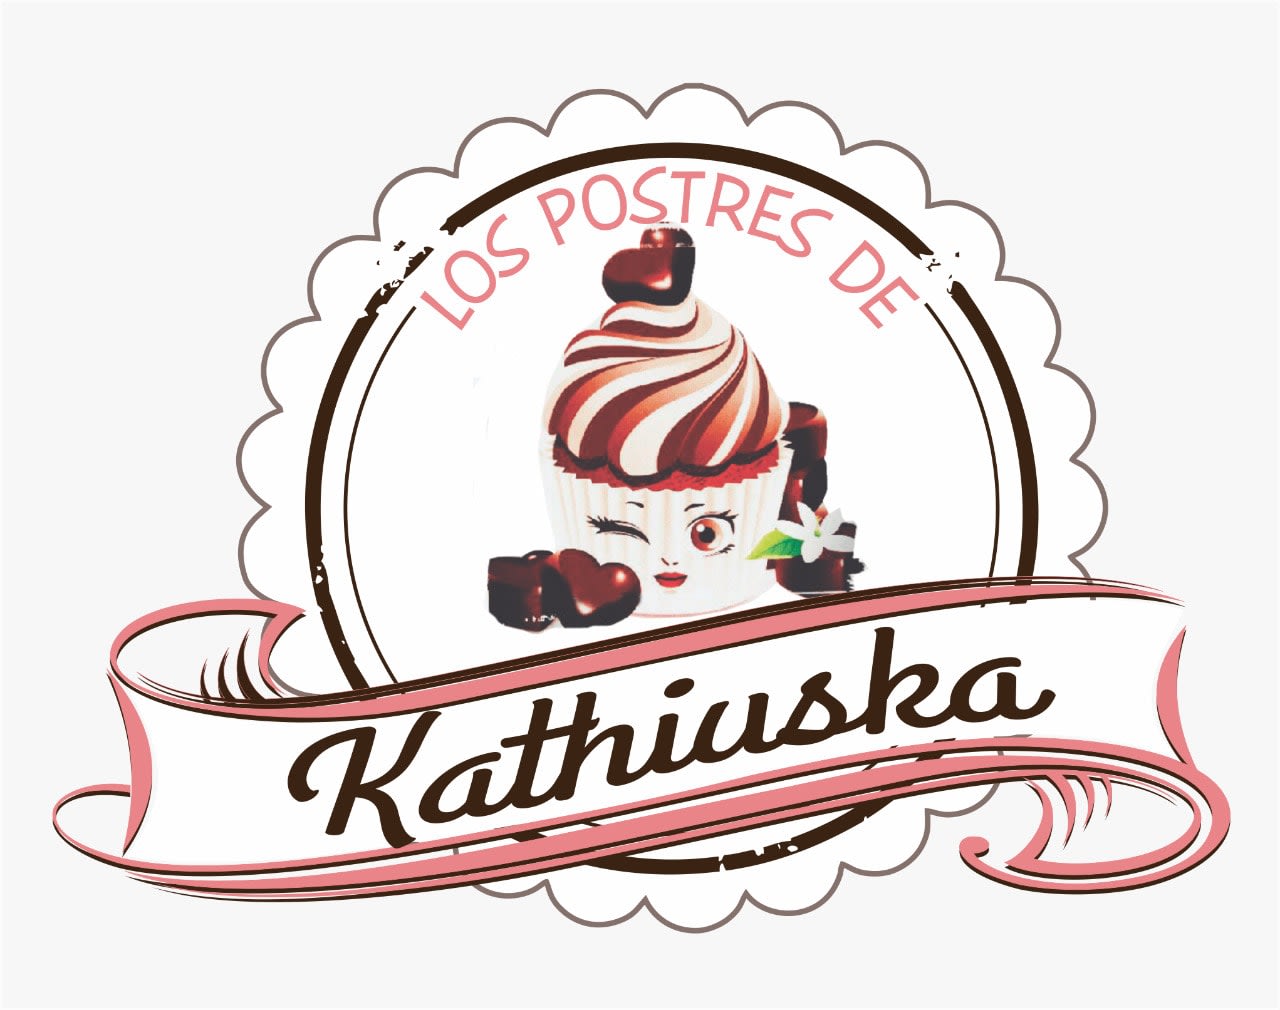 Los postres de Kathiuska